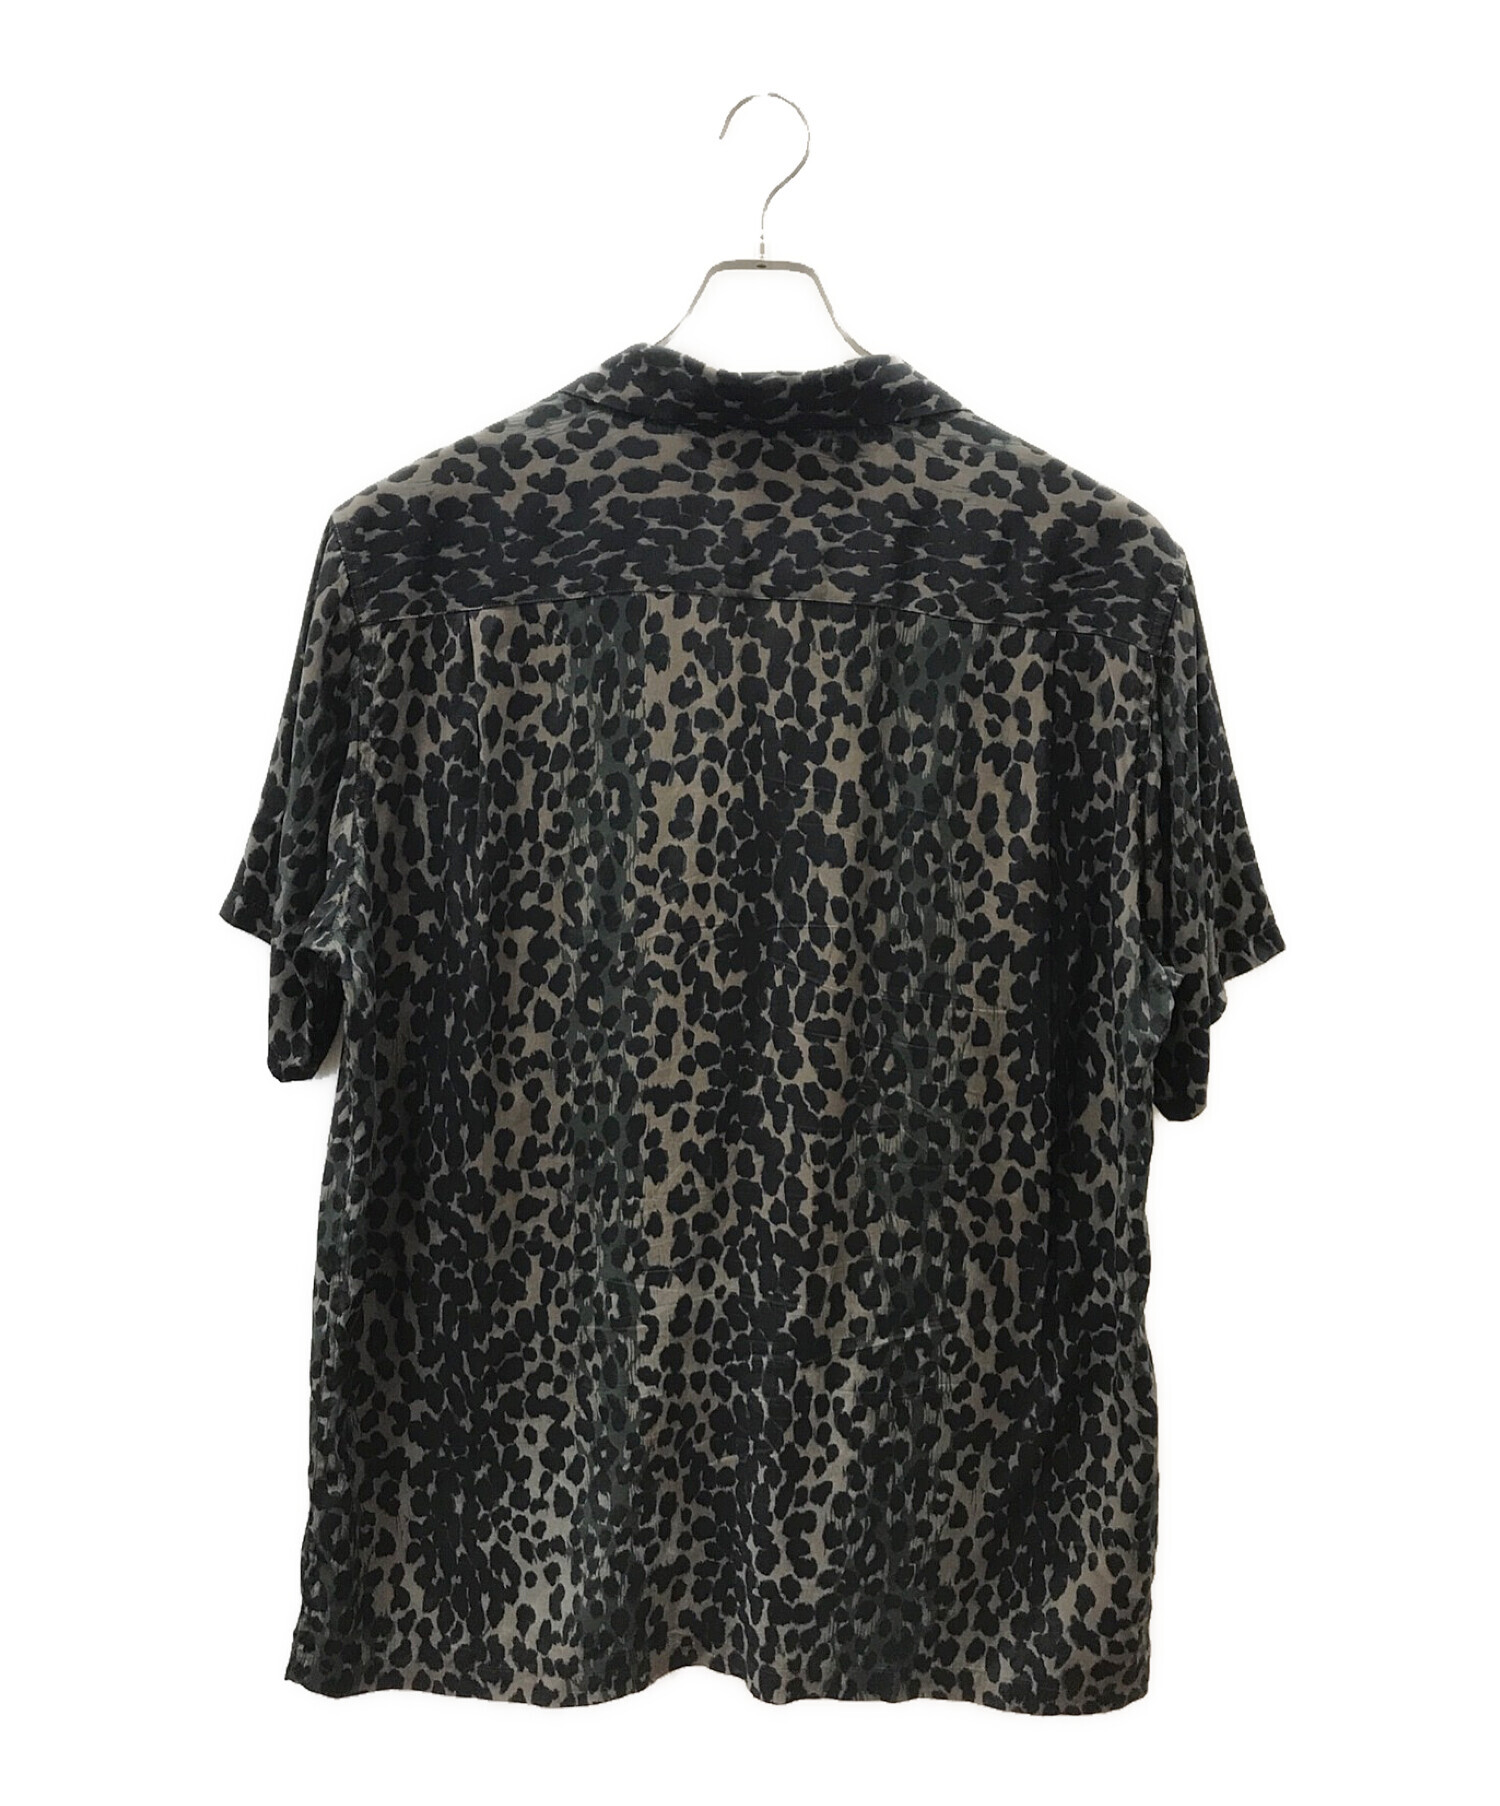 WACKO MARIA (ワコマリア) レオパード柄オープンカラーシャツ グレー サイズ:XL